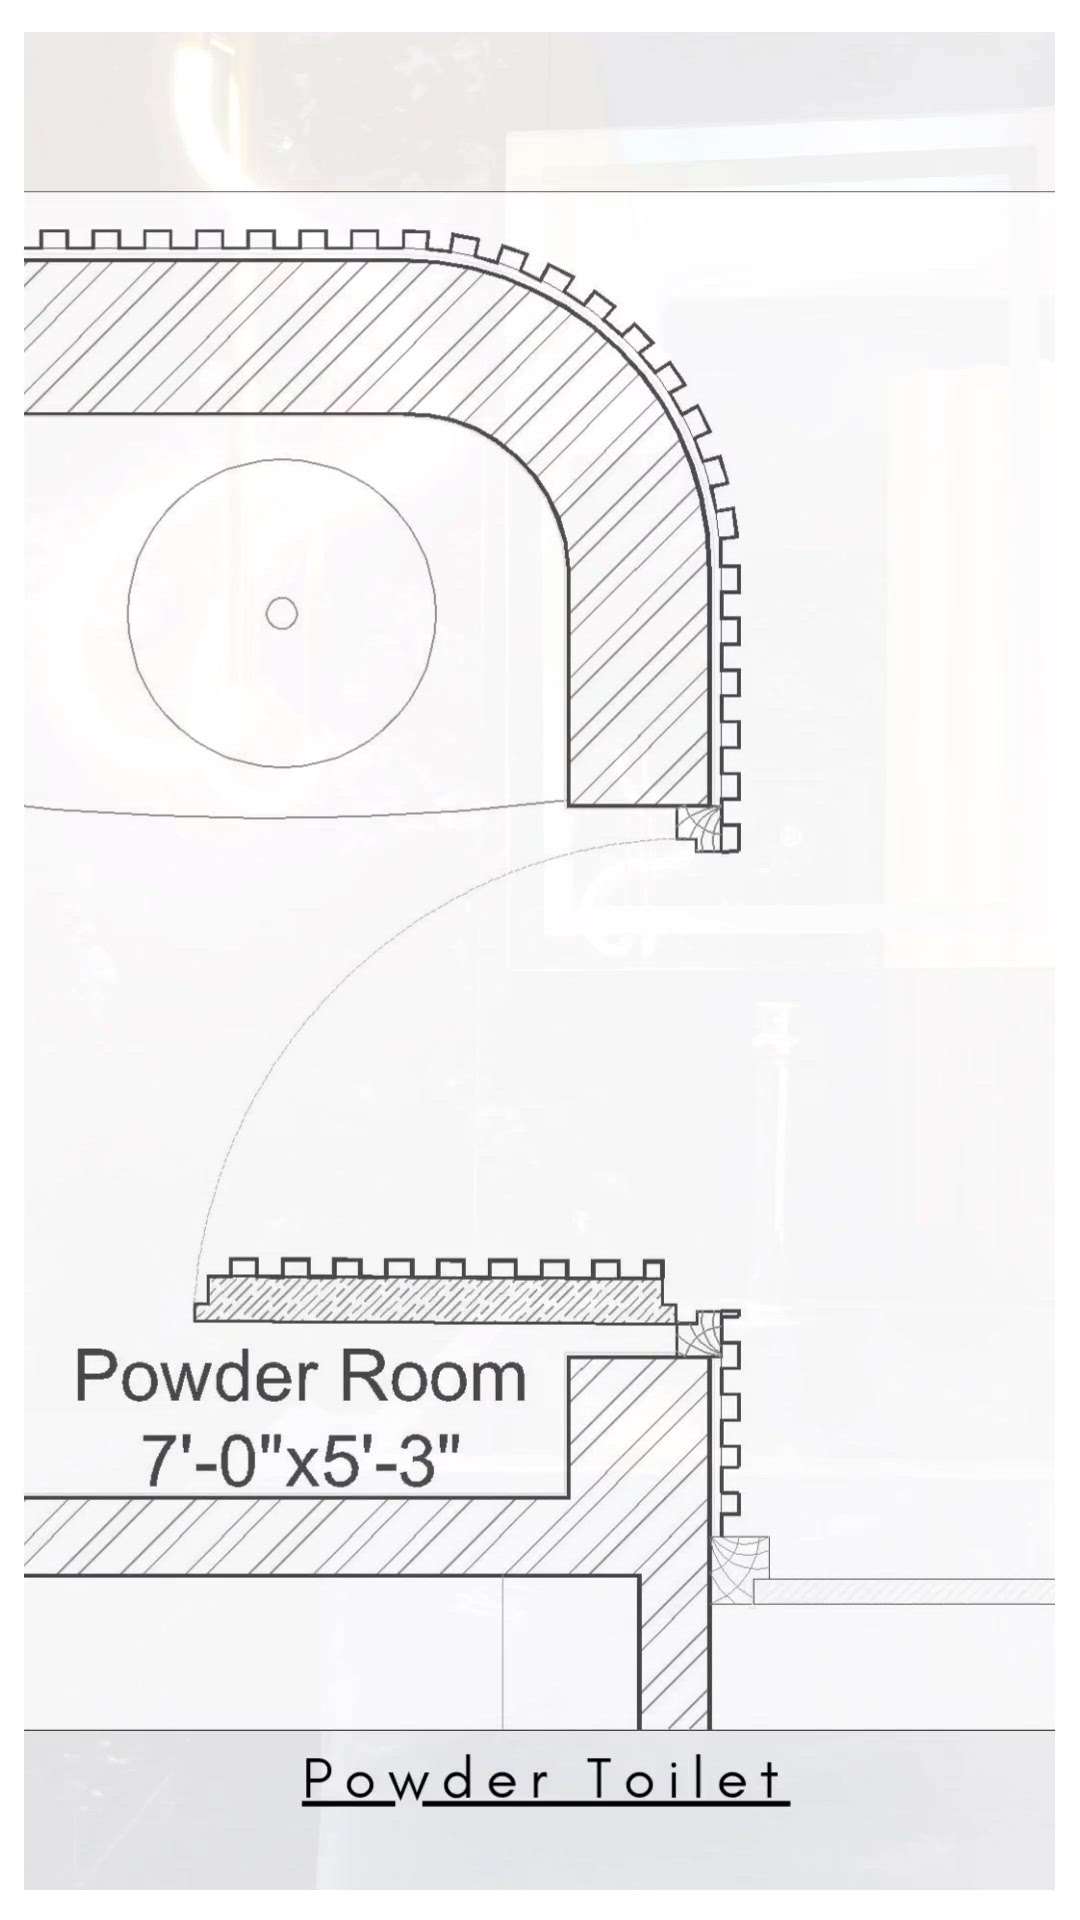 powder toilet hidden door.
.
.
.

#powderroom #3toilets #4DoorWardrobe #FoldingDoors #DoubleDoor #FrenchDoor #FrontDoor